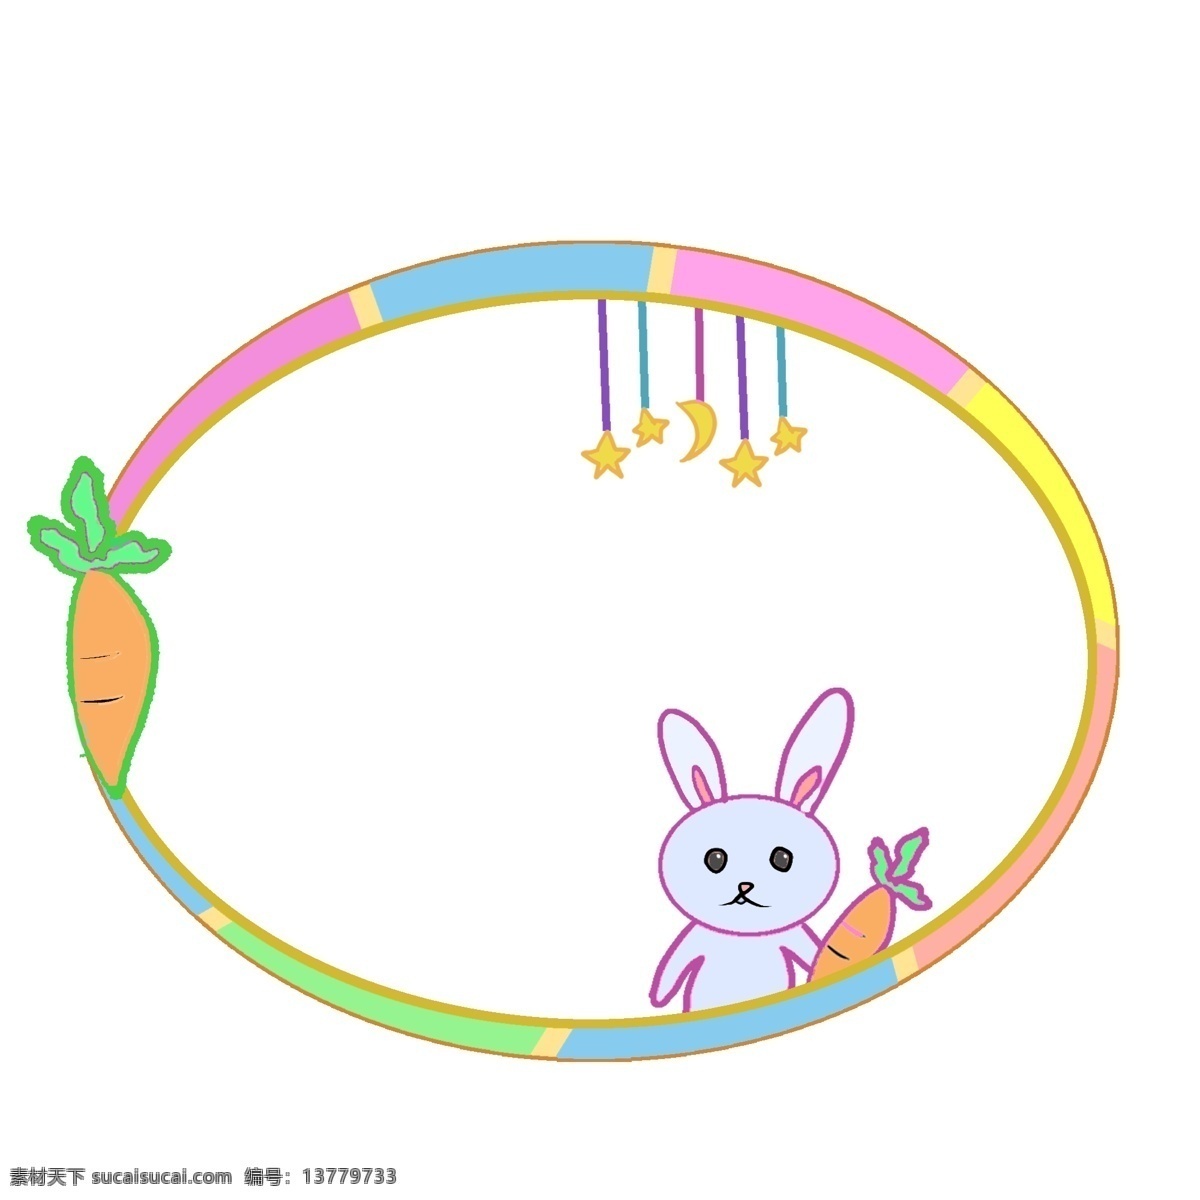 可爱 兔子 边框 可爱的兔子 卡通边框 美丽边框 漂亮边框 小物边框 物品边框 椭圆形边框